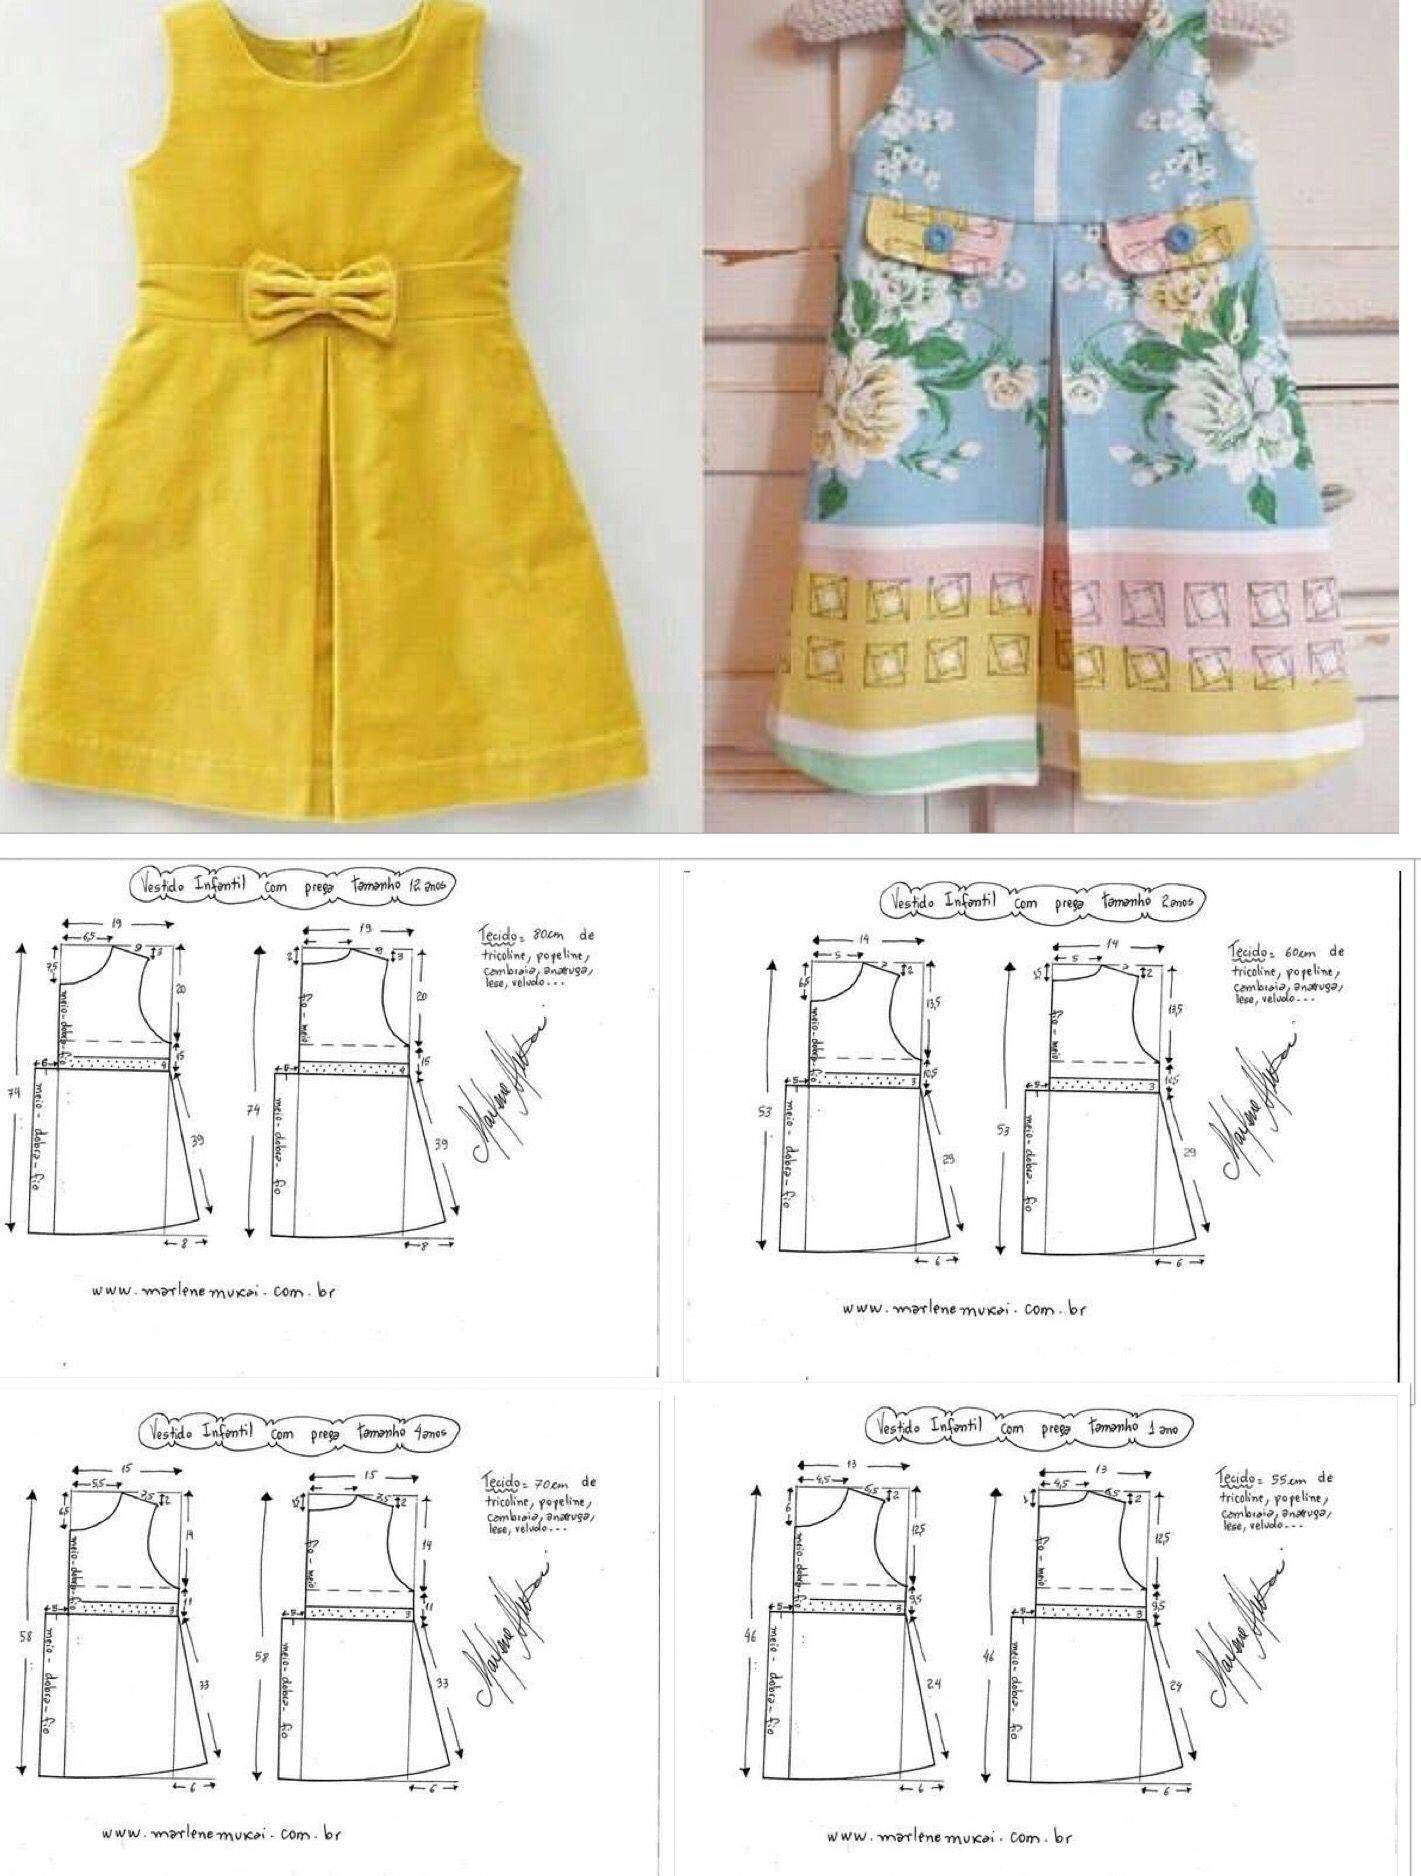 Выкройки детских платьев и сарафанов: самостоятельно делаем замеры (на примере) и строим чертеж-основу + несколько вариантов симпатичных платьев для девочек разного возраста